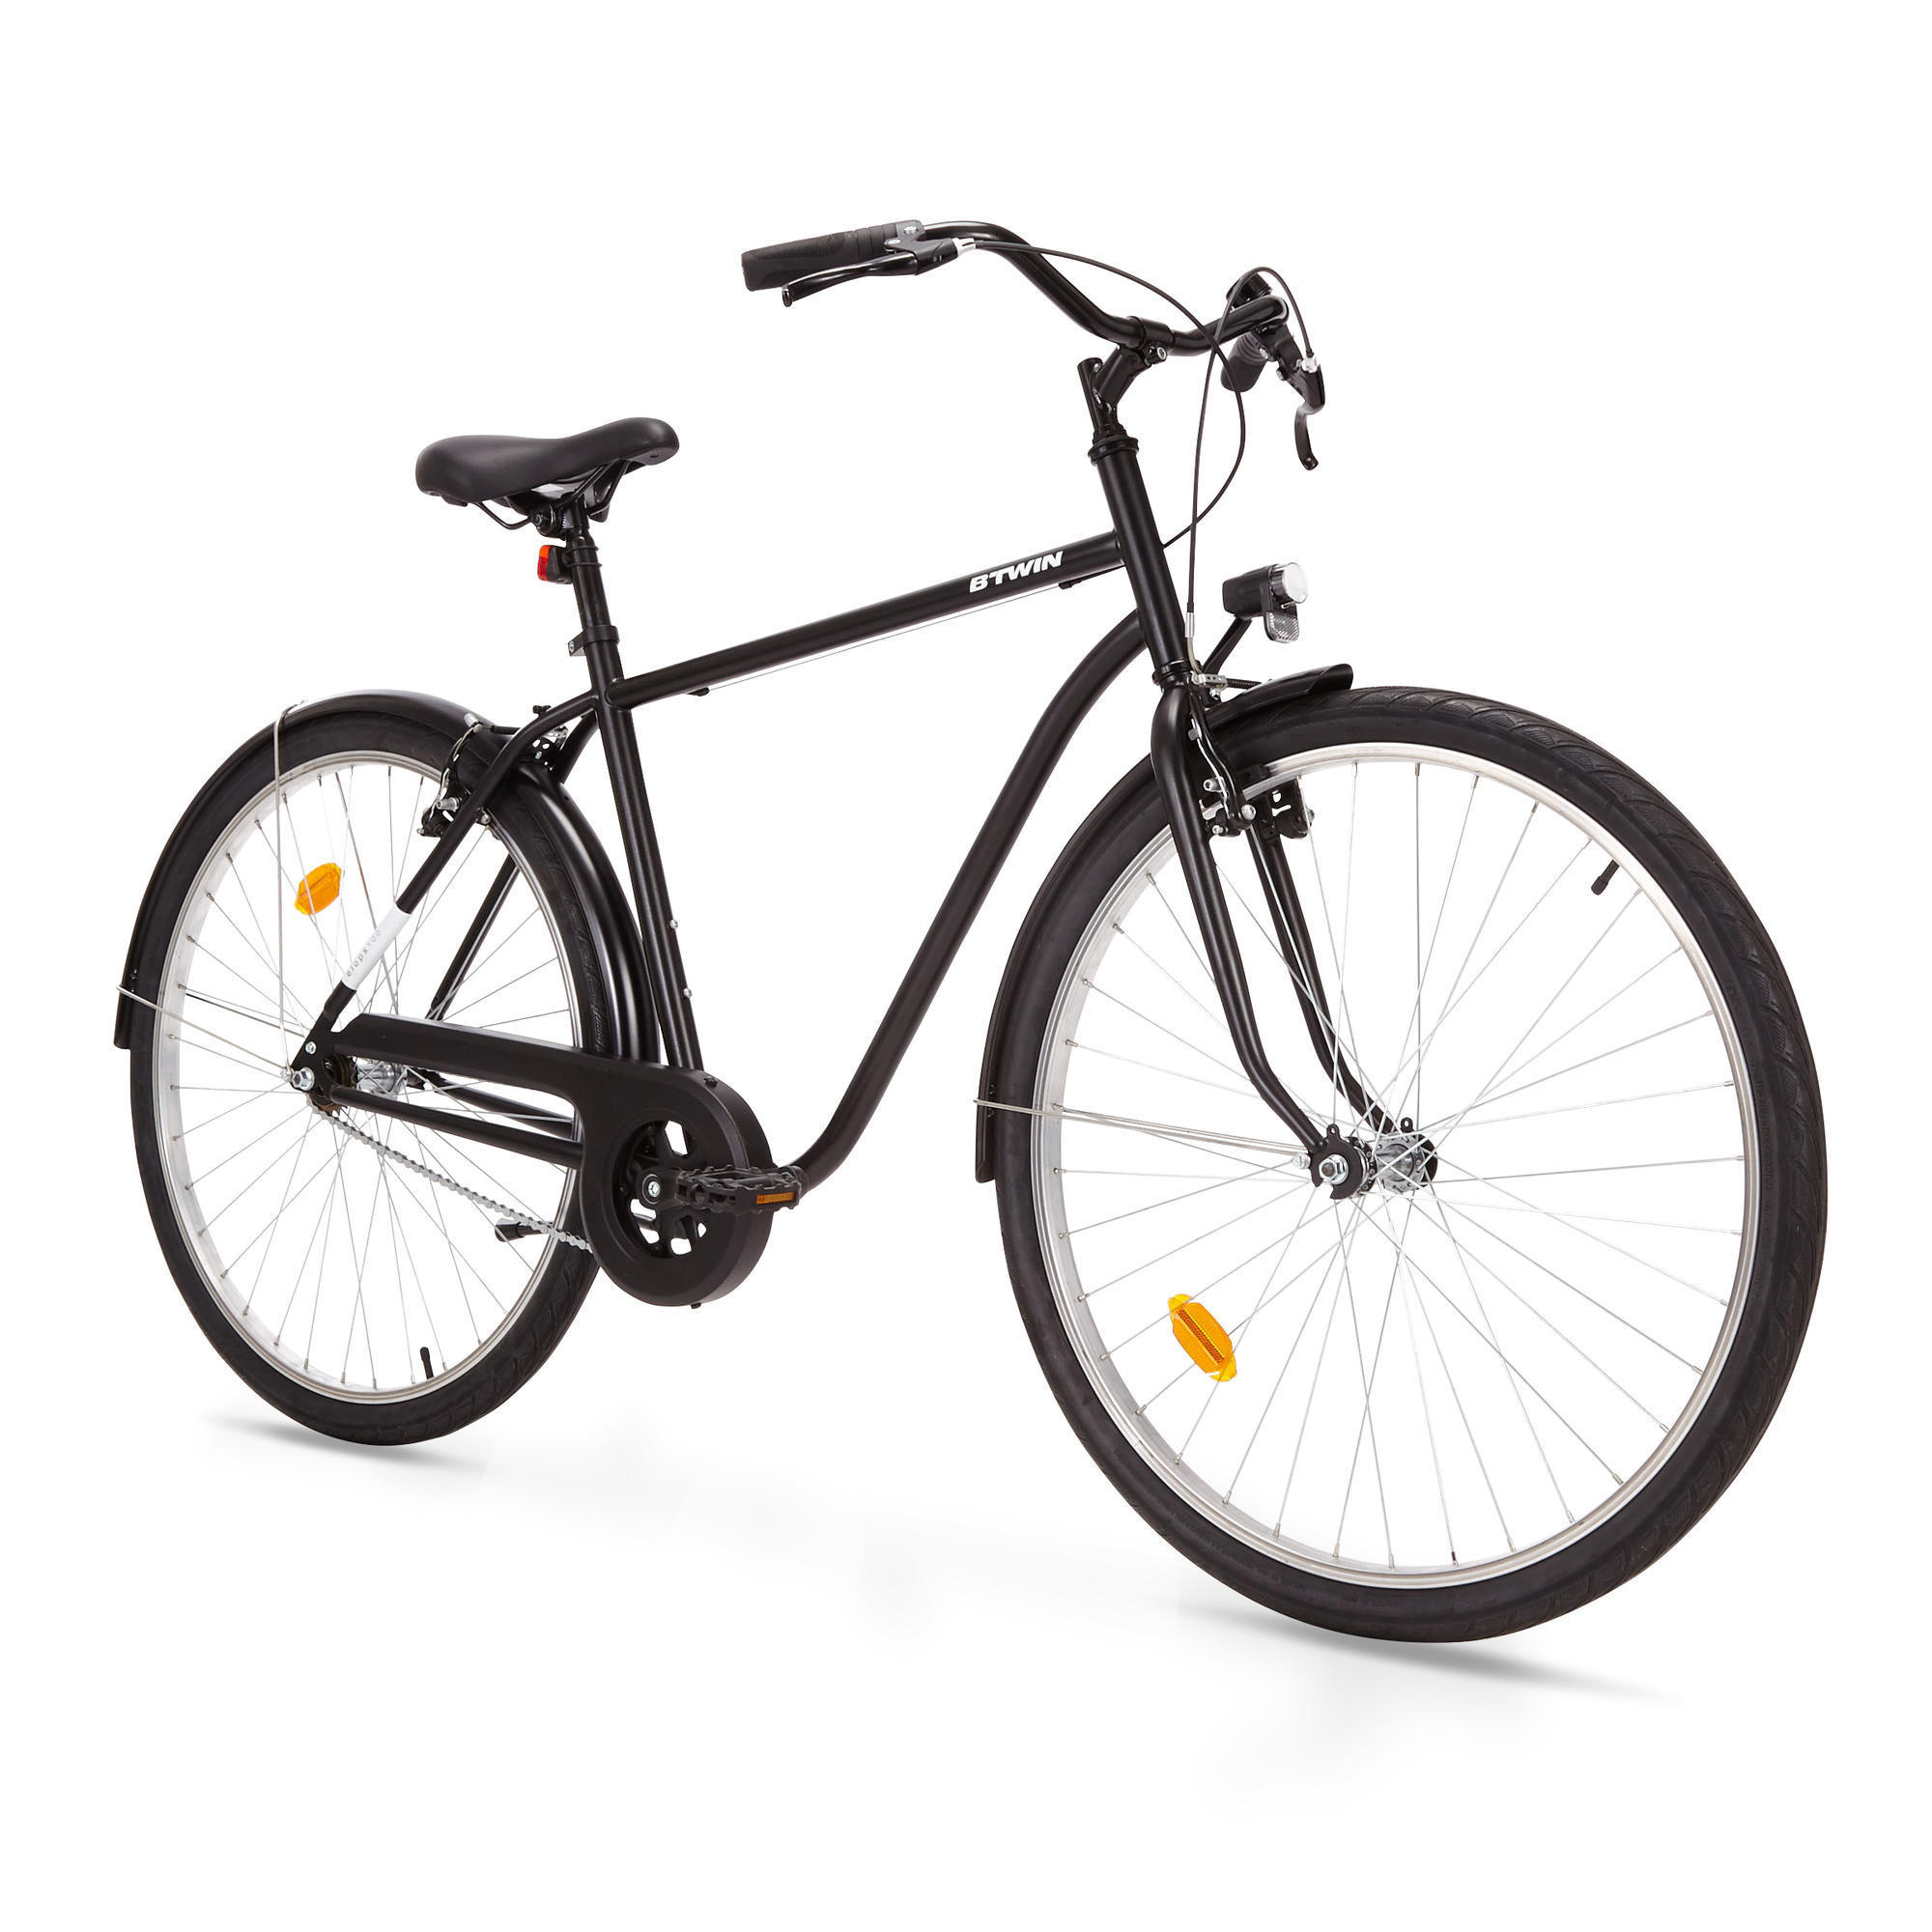 Elops 100 High Frame City Bike - Black 